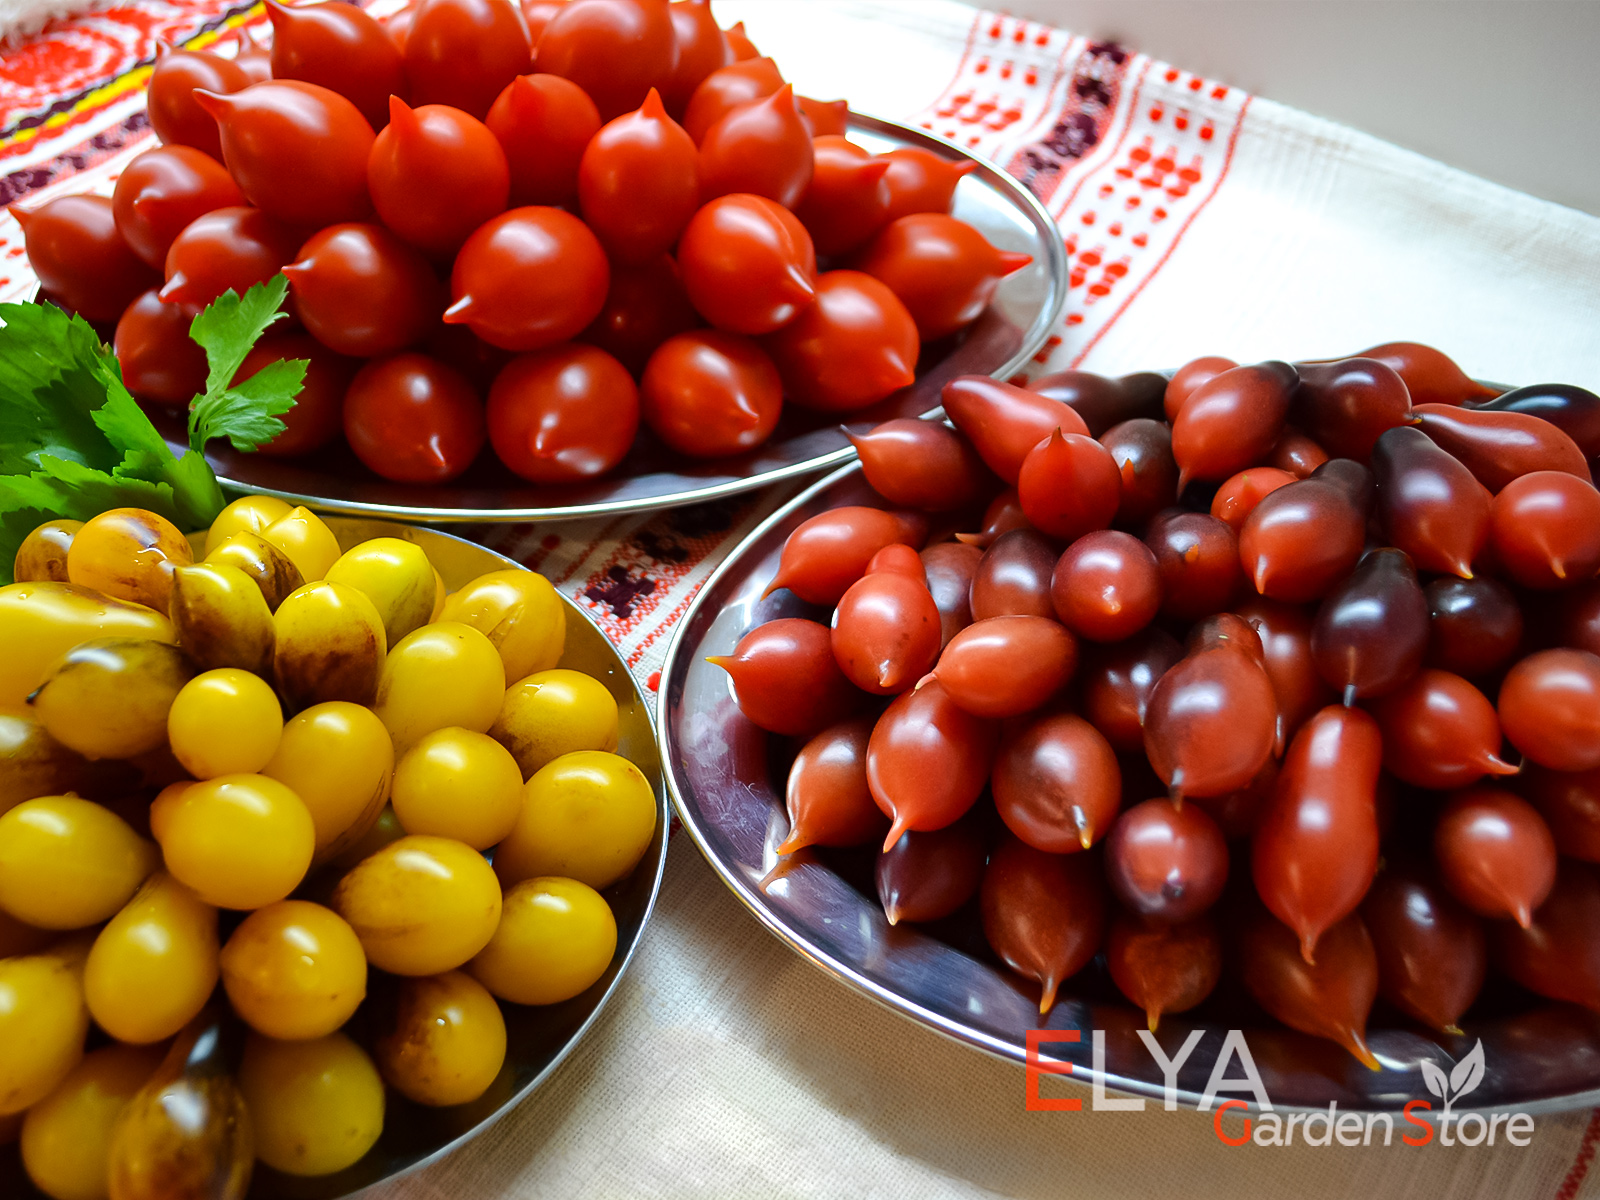 Коллекционные сорта томатов а магазине Elya Garden - фотография